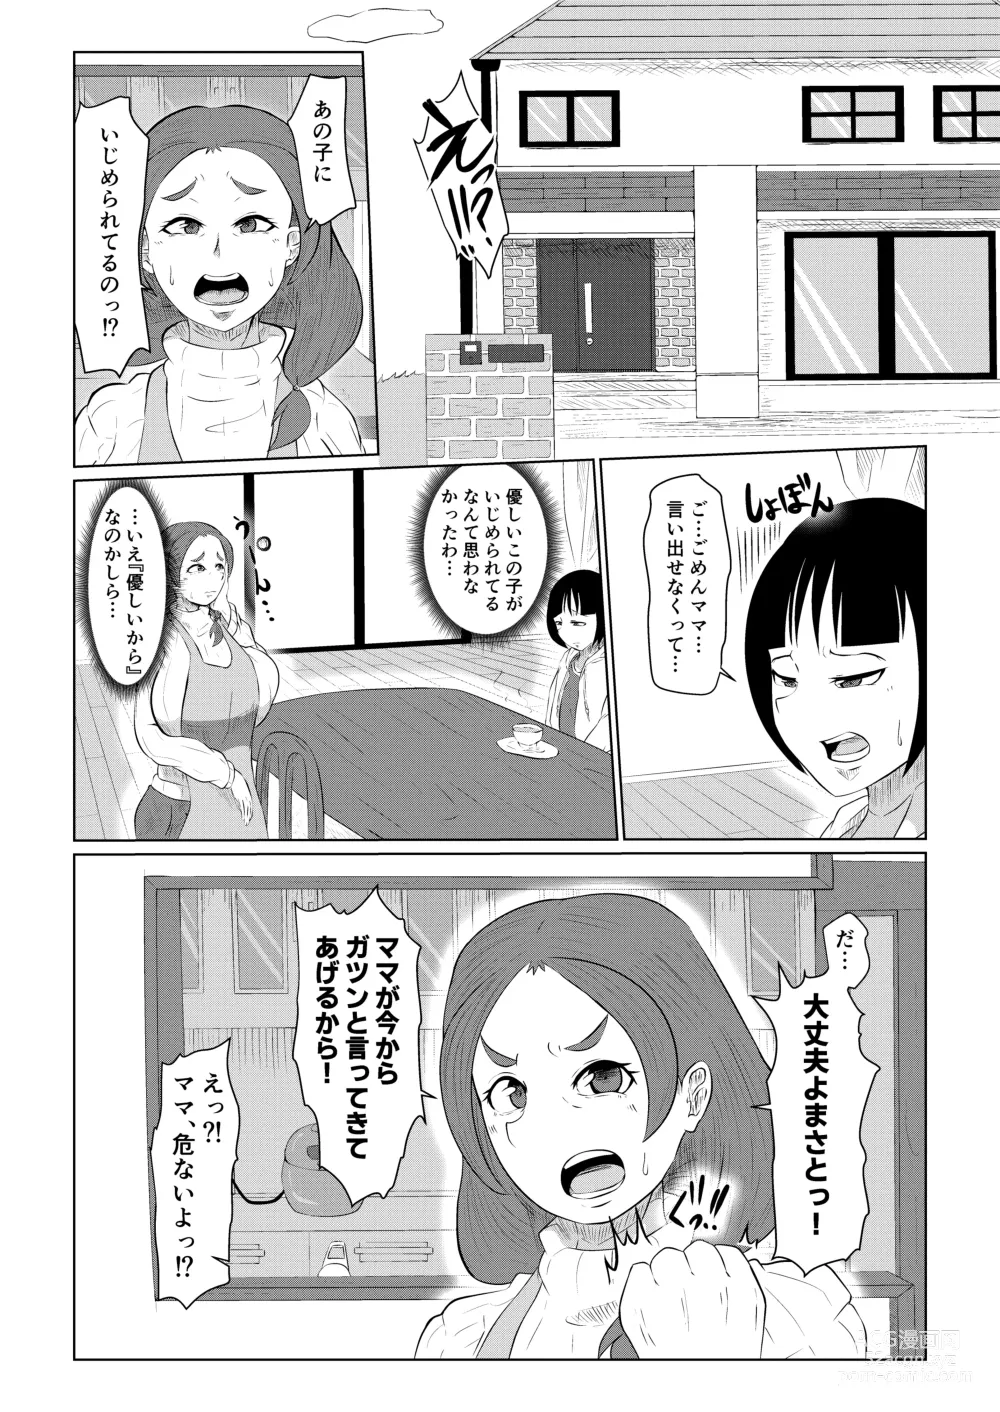 Page 4 of doujinshi Doushite Aitsu nanka ni...